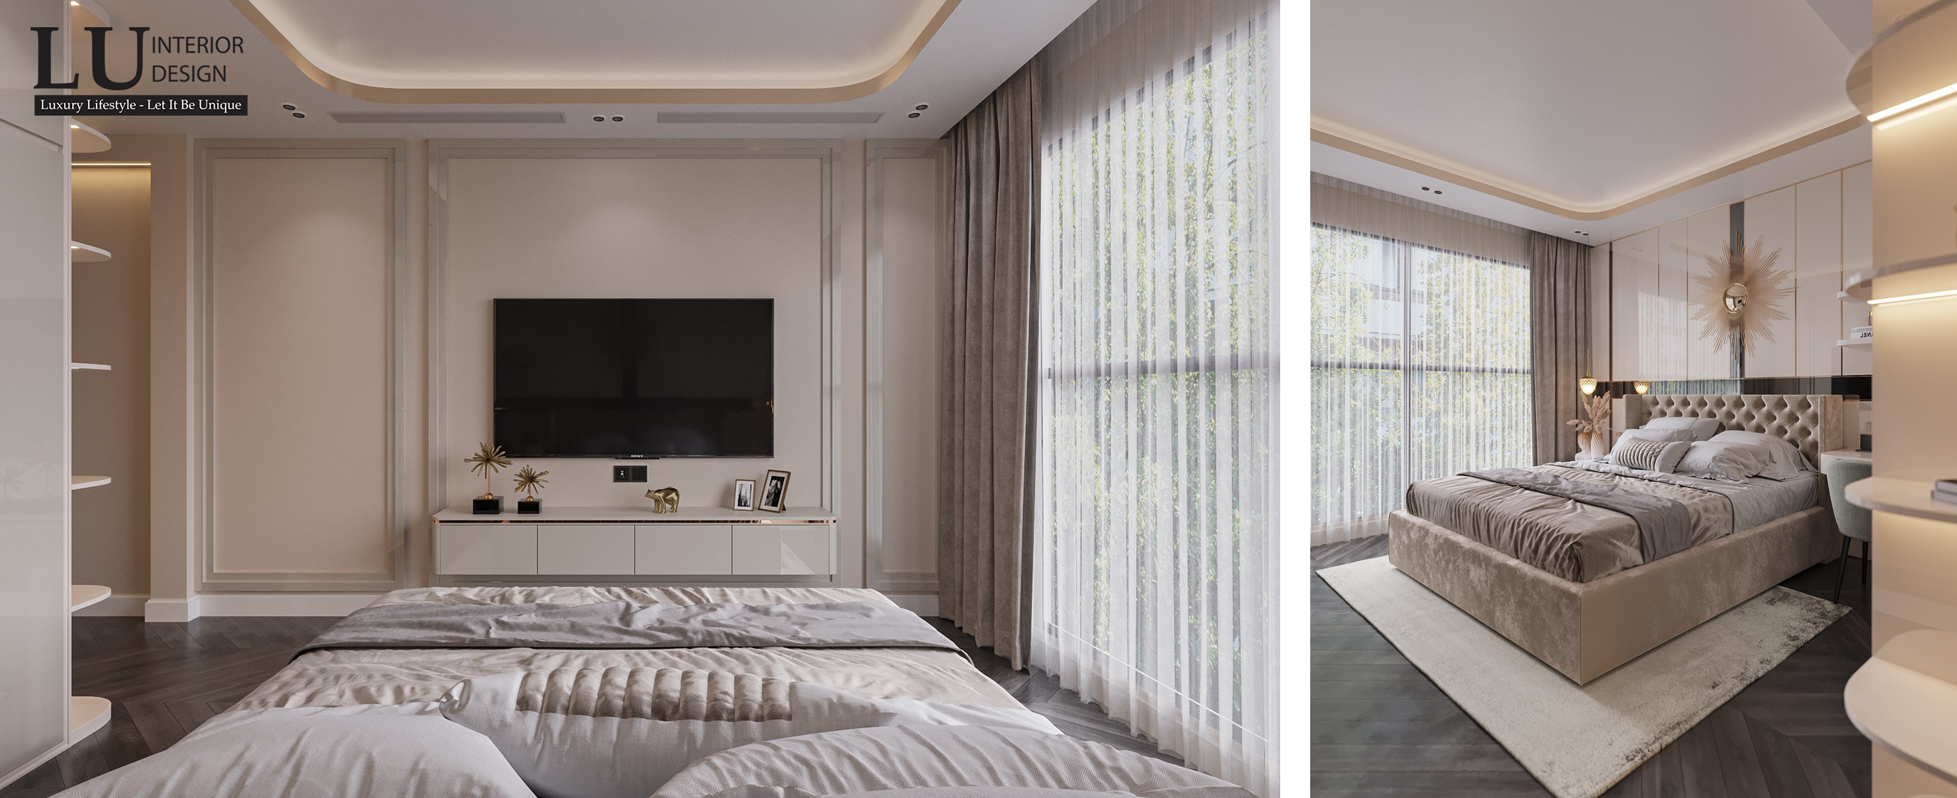 Thiết kế nội thất phòng ngủ nhà phố Tân Phú phong cách Tân cổ điển hiện đại.